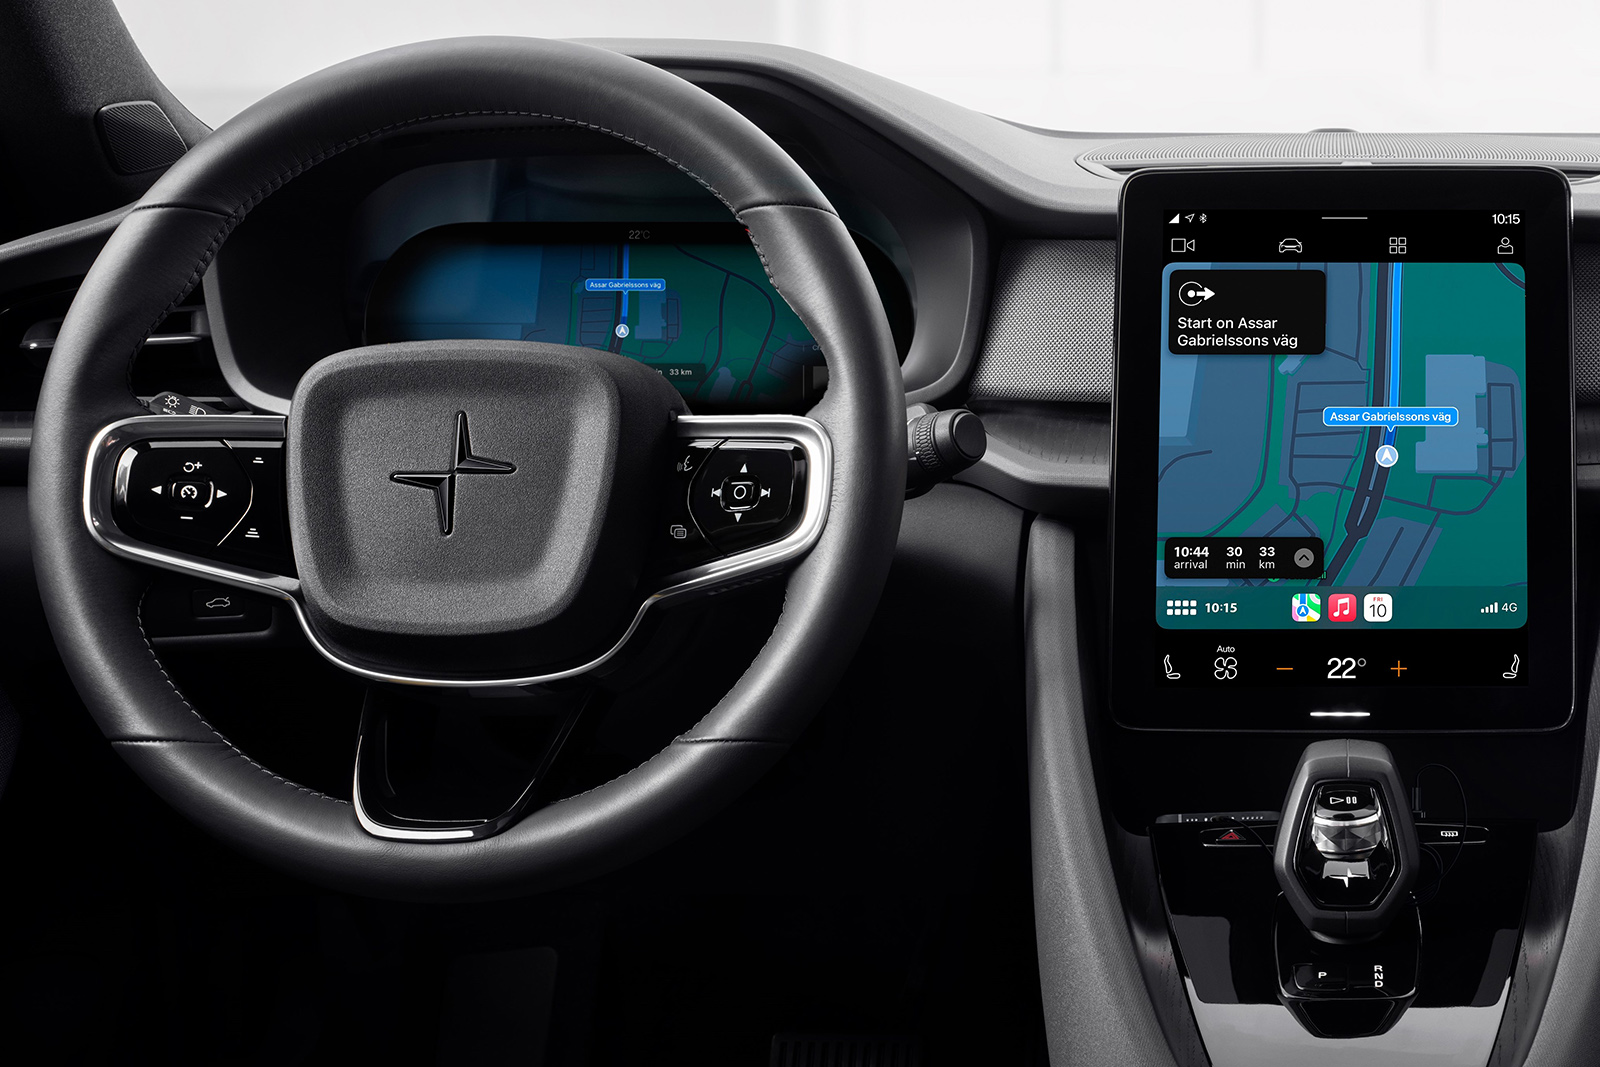 Google fügt Android Auto künstliche Intelligenz hinzu, um die Ablenkung des Fahrers zu verringern